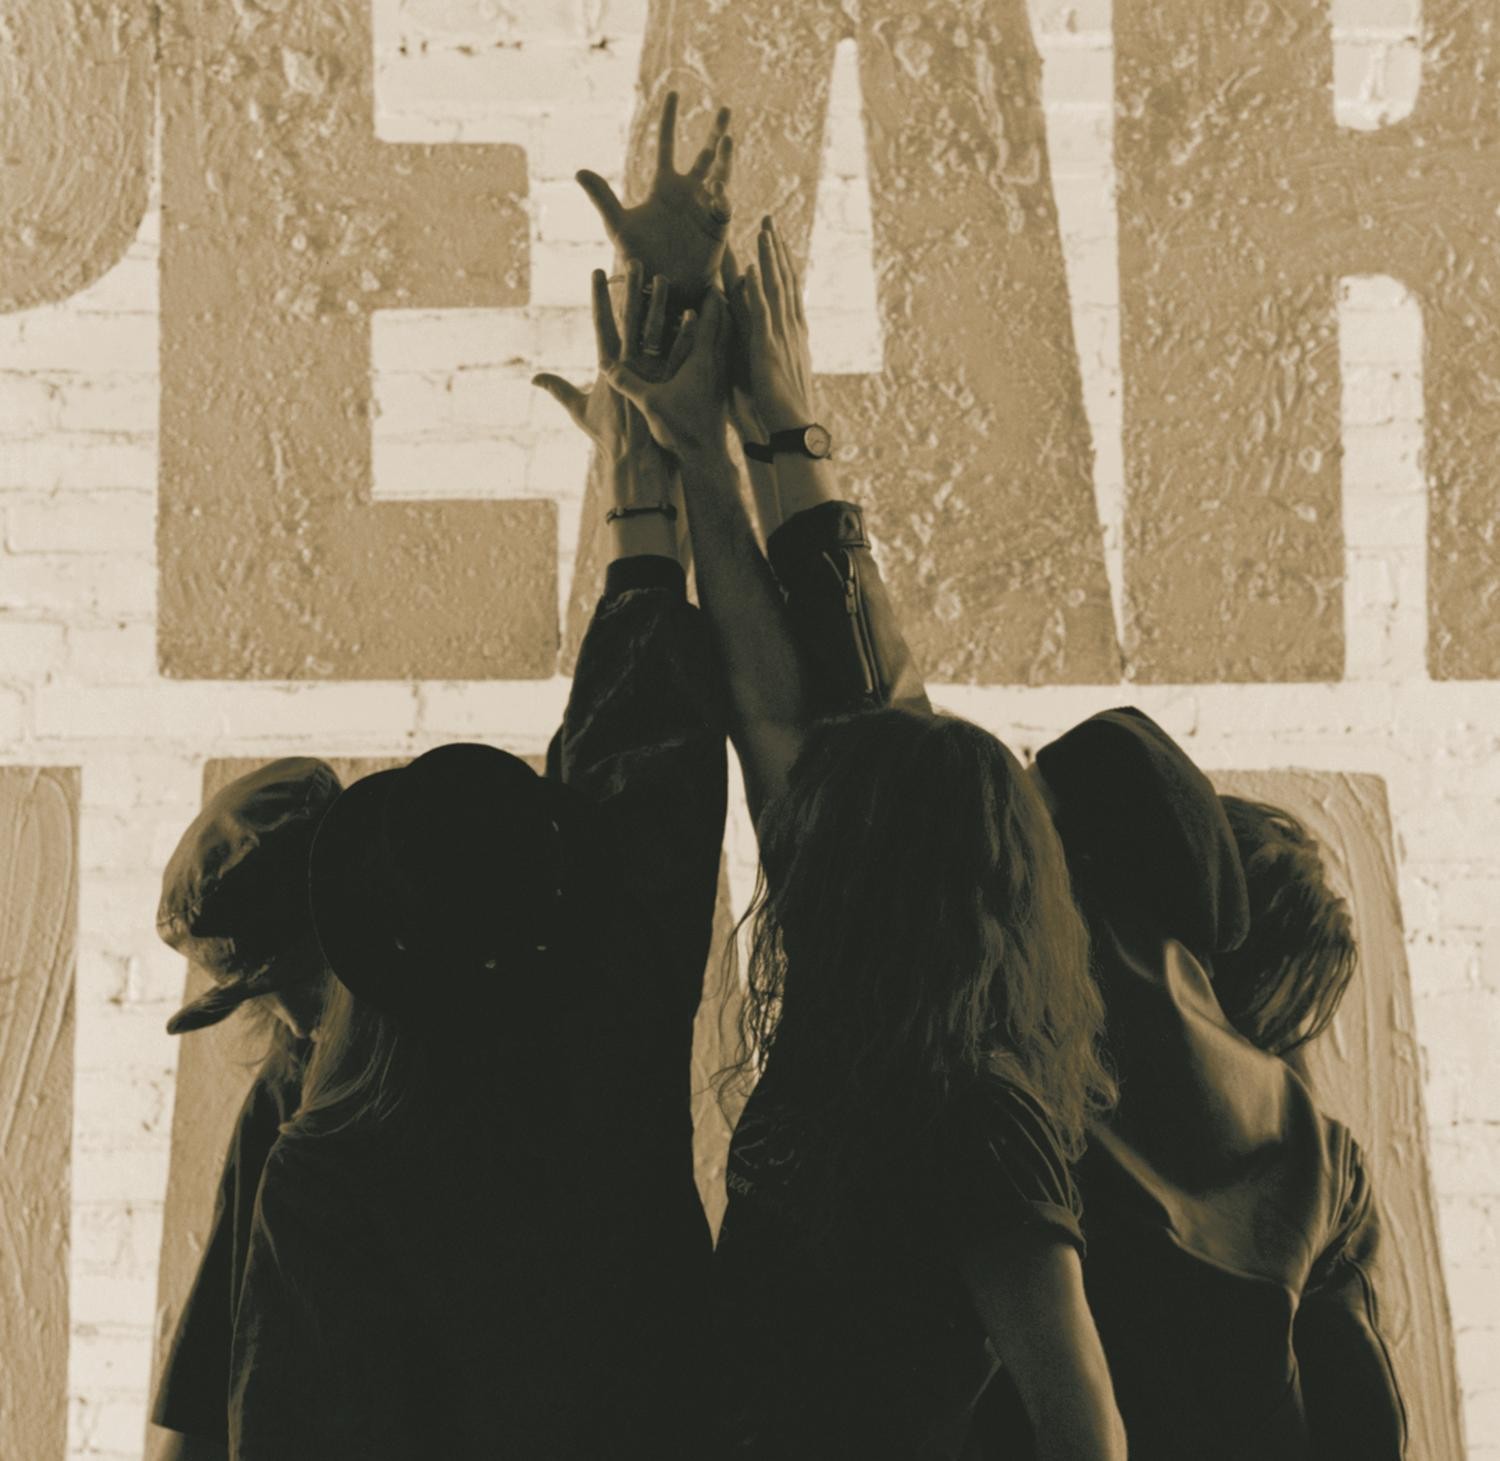 Pearl Jam - Ten 2XLP